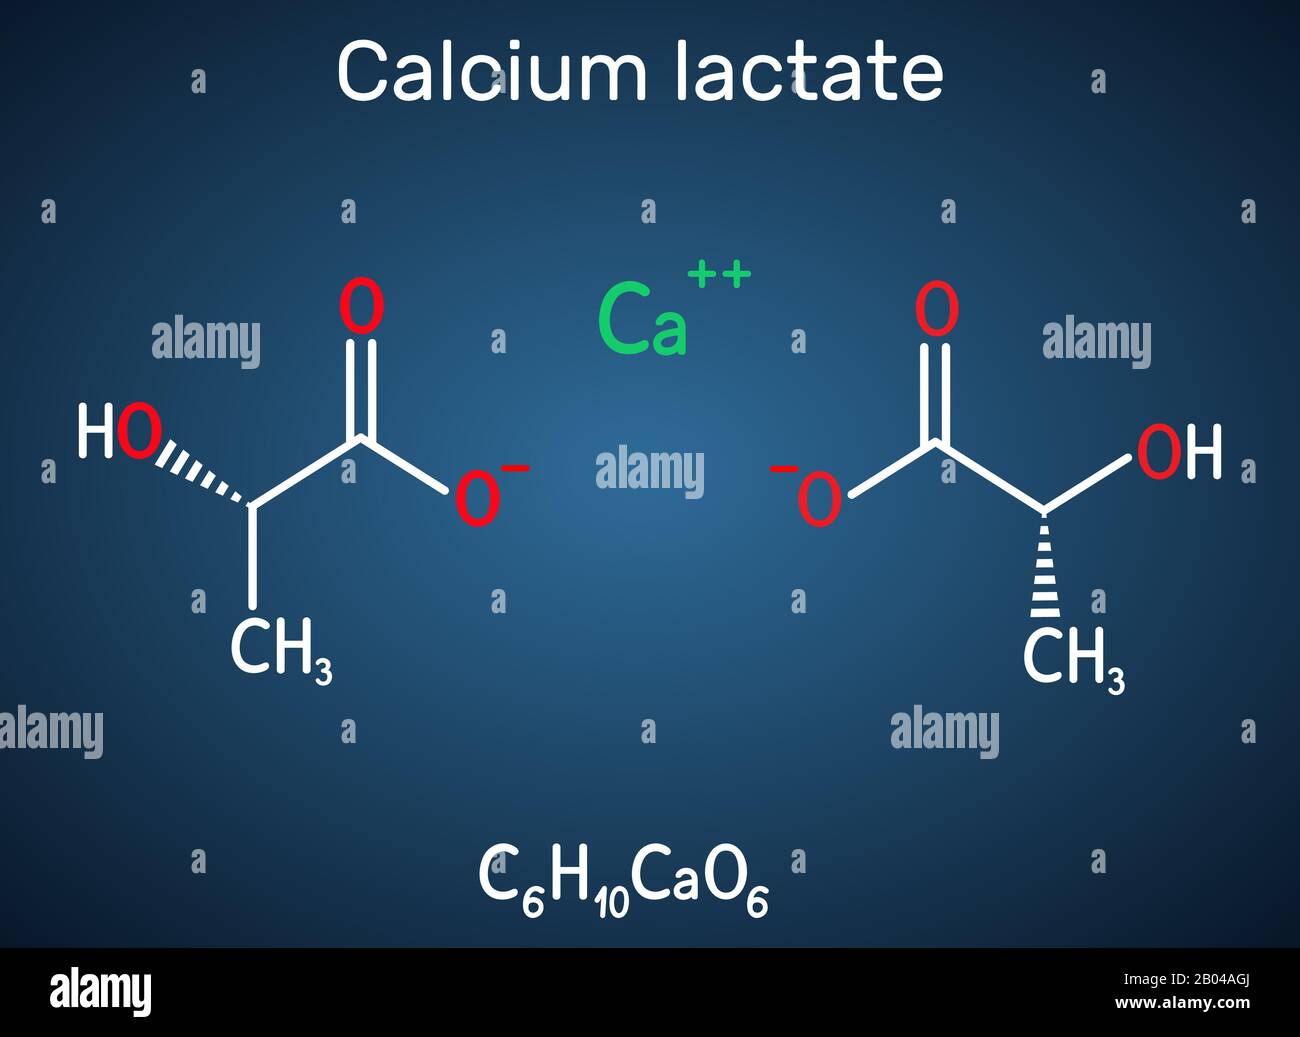 Lattato di calcio, C6H10CaO6, molecola di anione lattato. Viene usato in medicina per trattare le carenze di calcio e come additivo alimentare E327. chemica strutturale Illustrazione Vettoriale